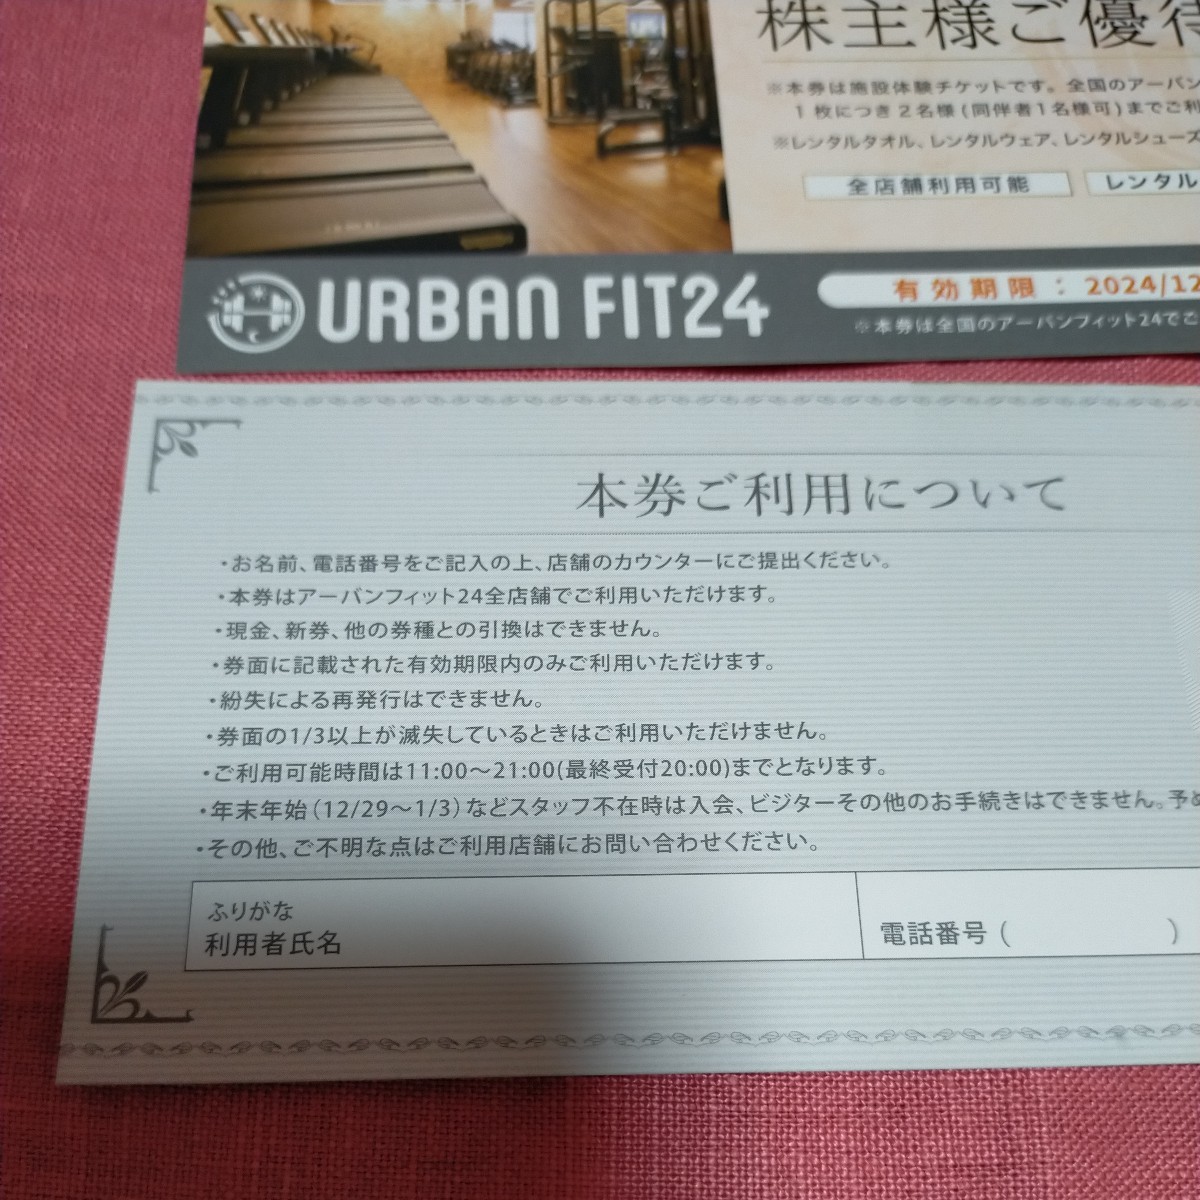  новейший urban Fit 24 объект body . талон 2 листов бесплатная доставка urbanfit24